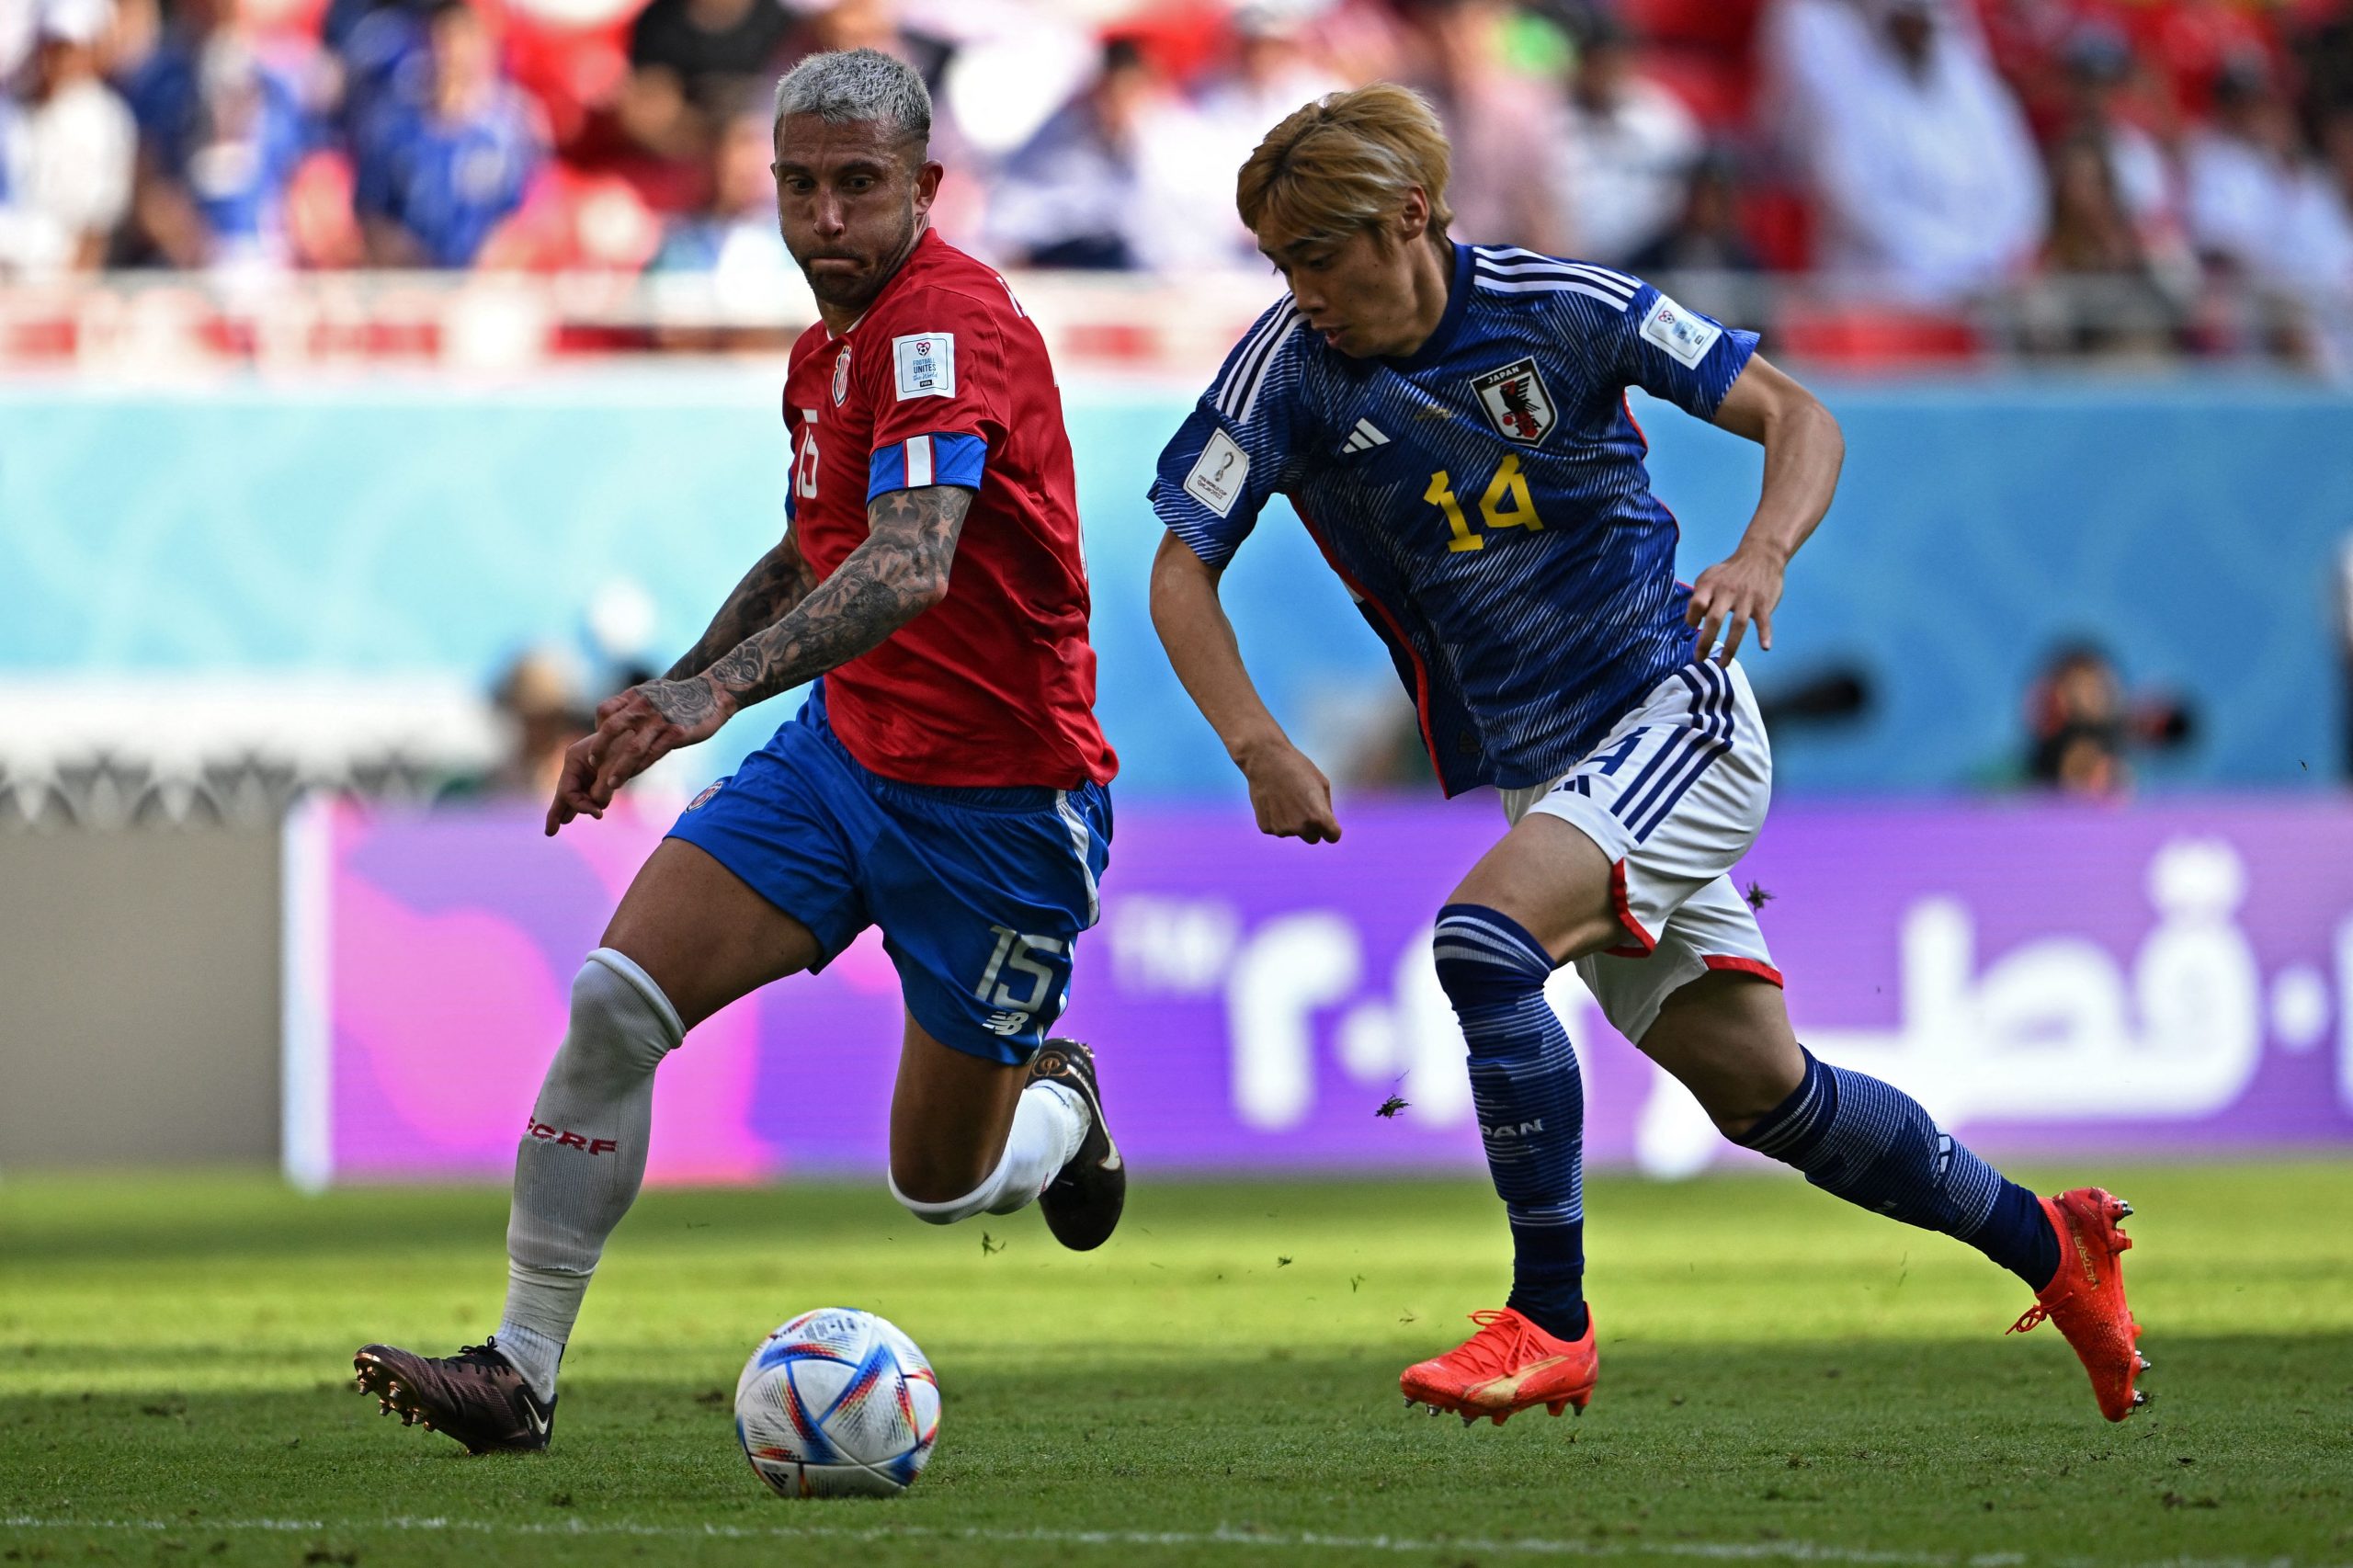 Costa Rica derrotó 1-0 a Japón y le quitó la chance de asegurar la clasificación